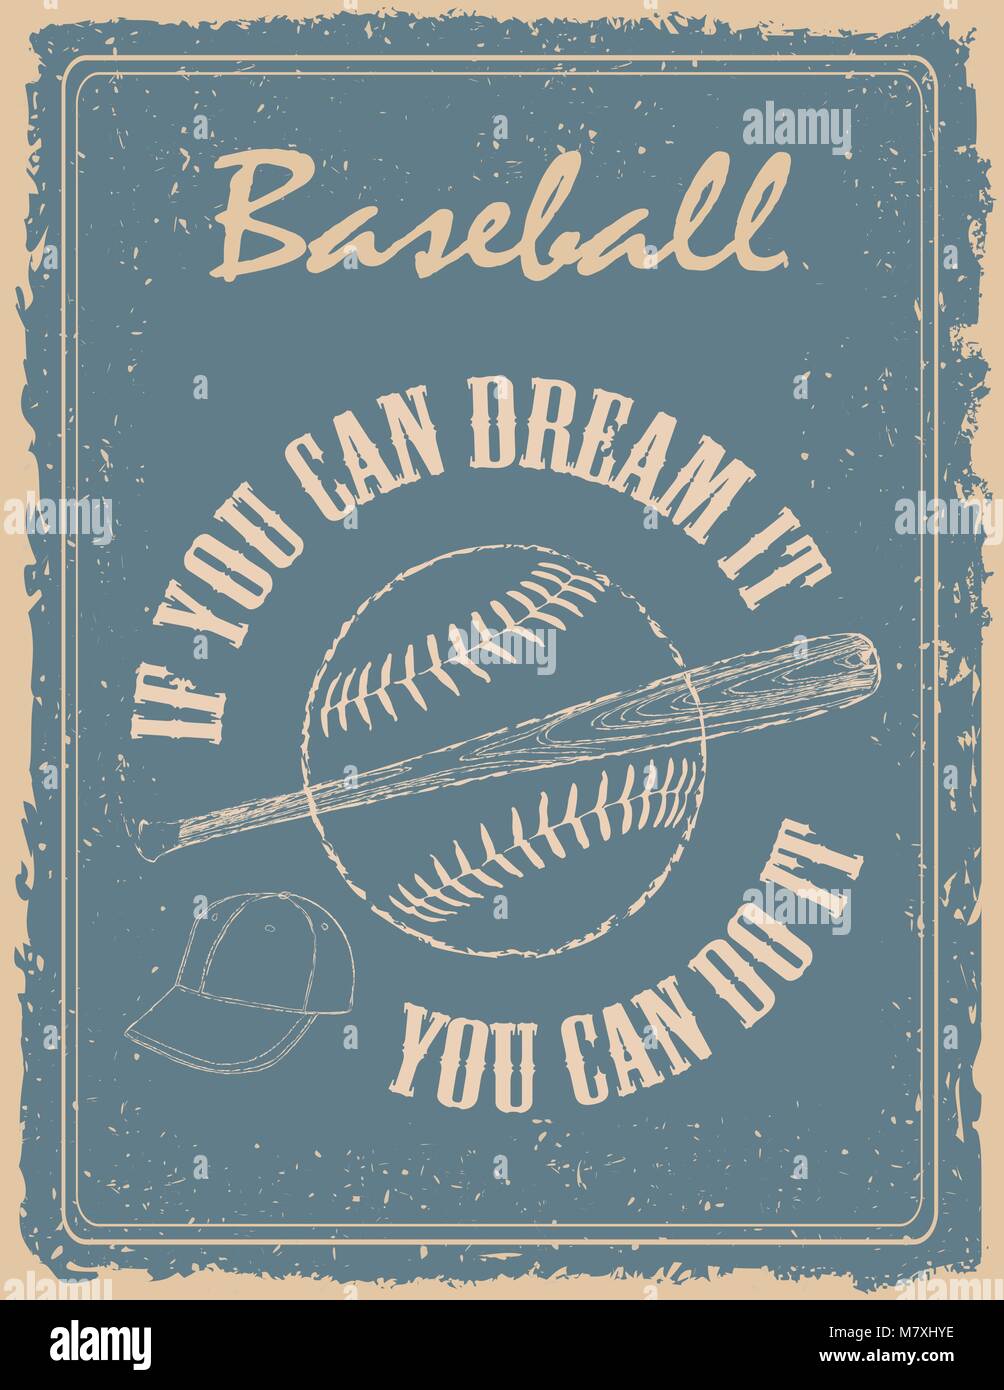 Vintage baseball Poster auf alten Papier Hintergrund mit Motivation Zitat von Walt Disney Stock Vektor